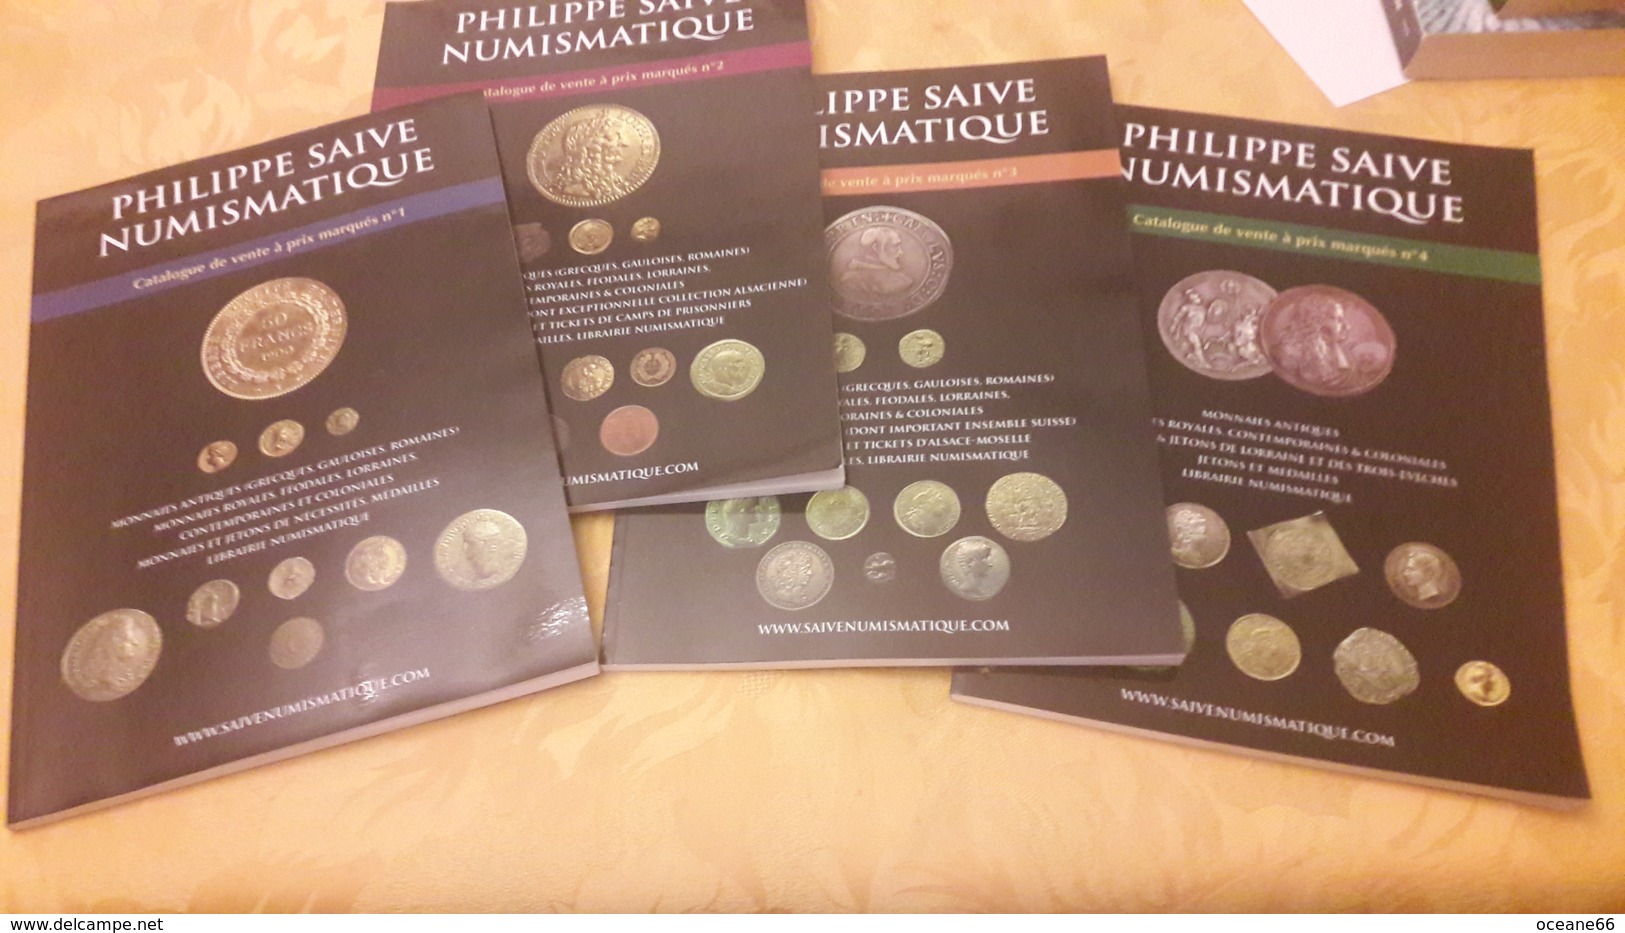 Lot: Philippe Saive Numismatique Catalogue De Vente à Prix Marqués 1 - 2 - 3 - 4 - Lots De Plusieurs Livres